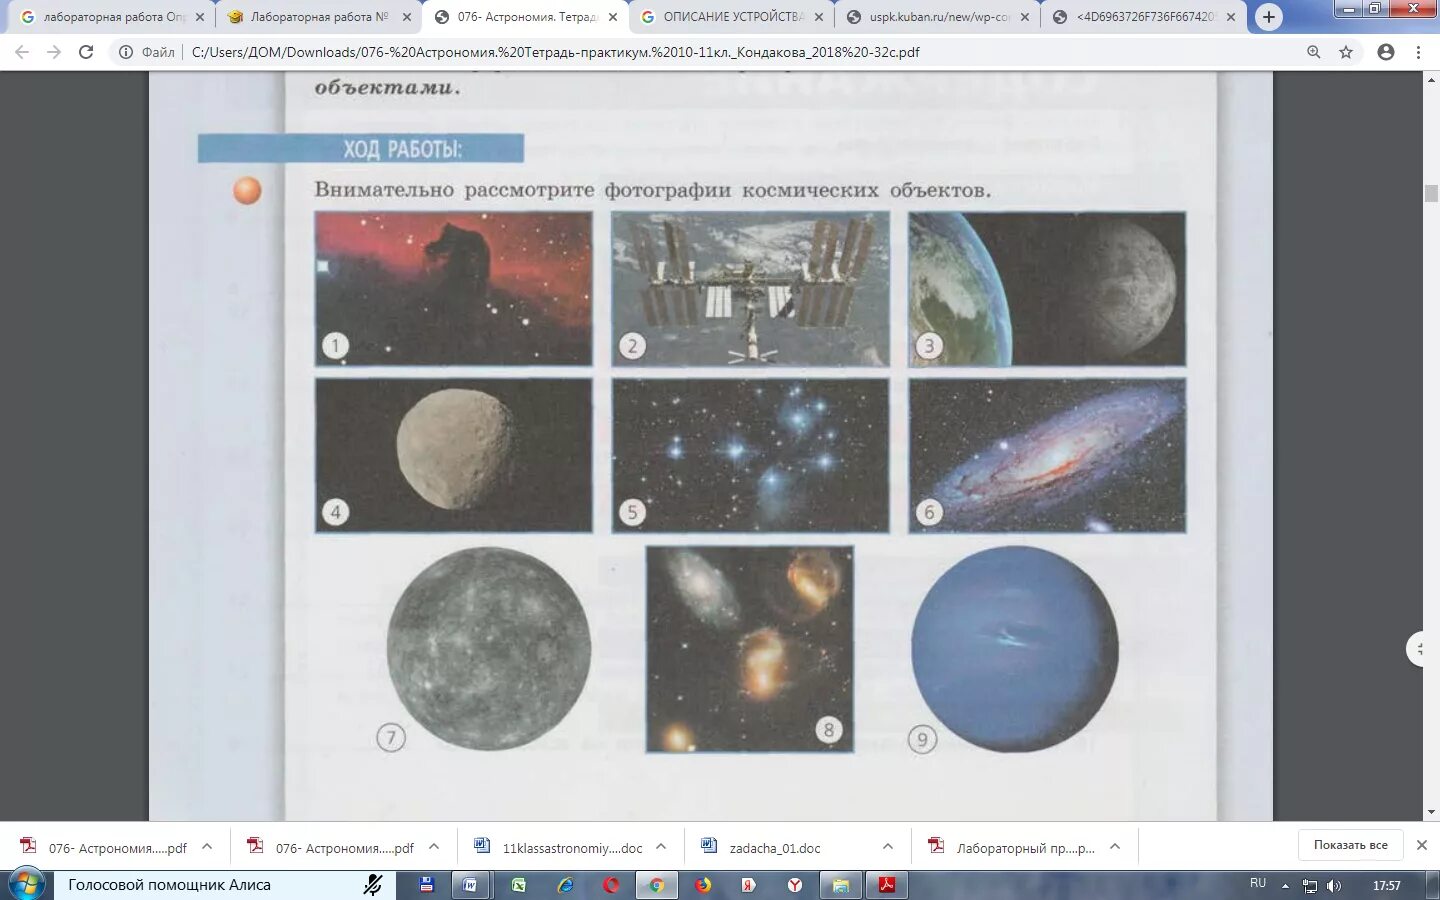 Типы и названия космических объектов. Определите какие космические объекты изображены на снимках. Космические предметы название. Внимательно рассмотрите фотографии космических объектов.